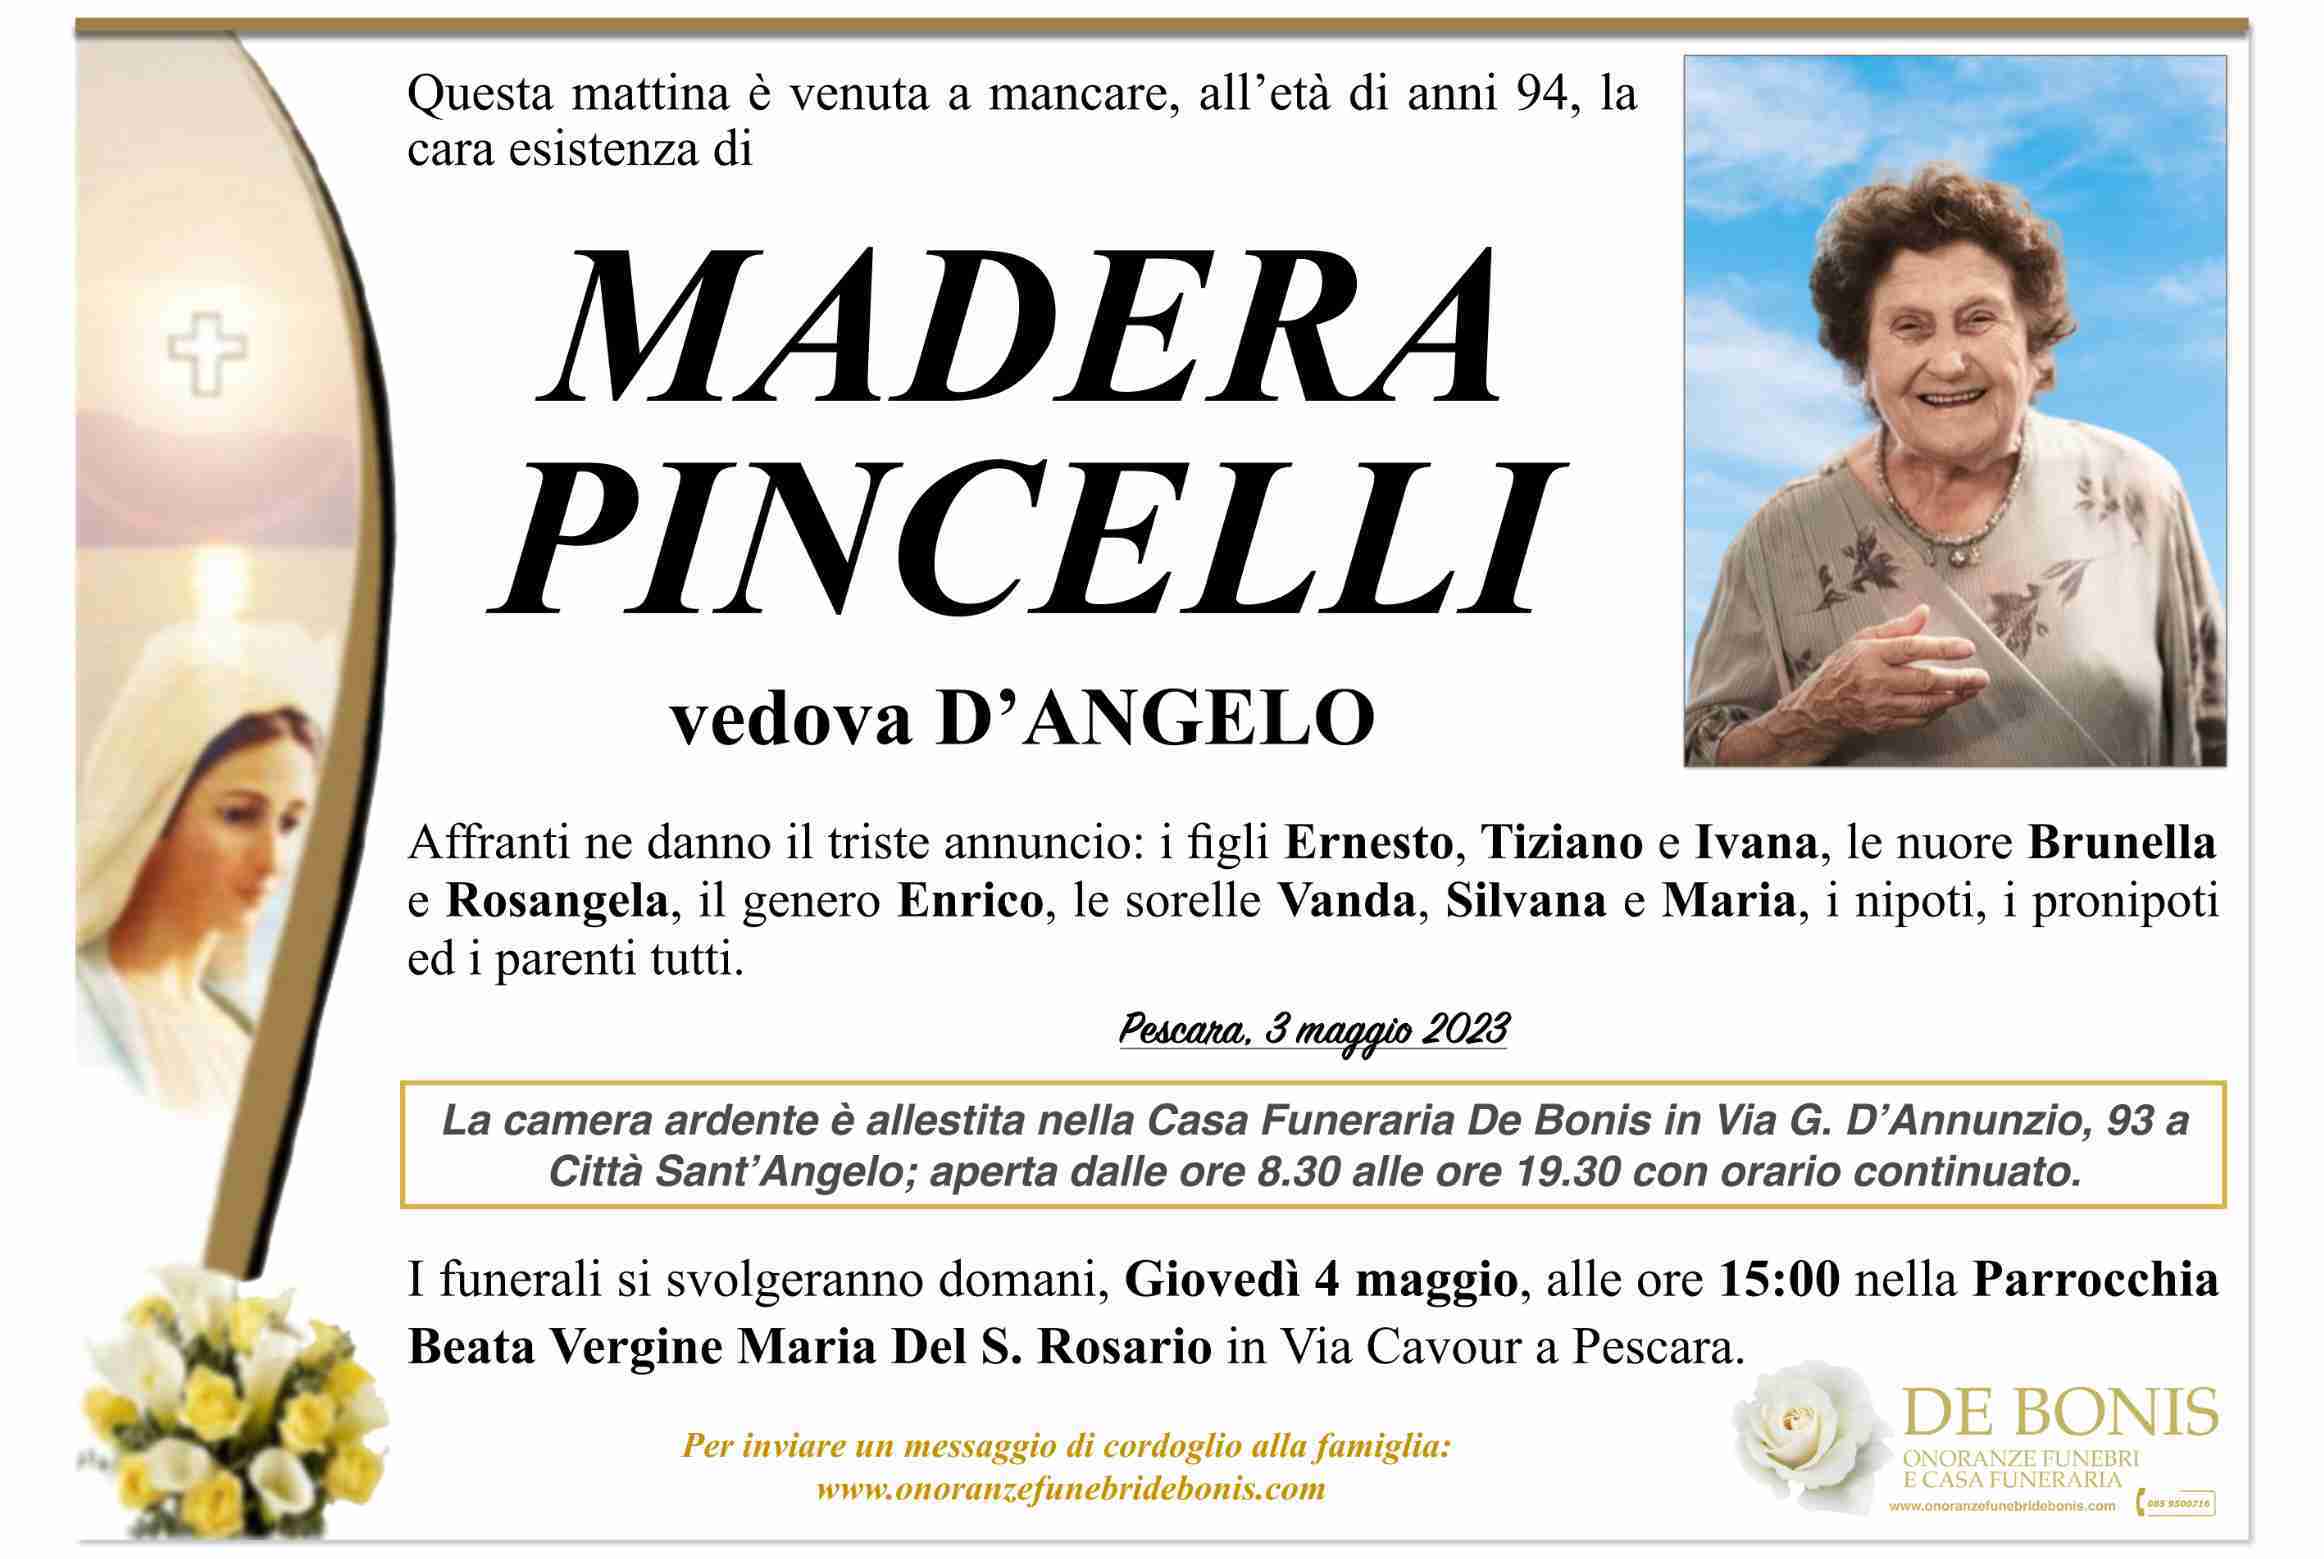 Madera Pincelli